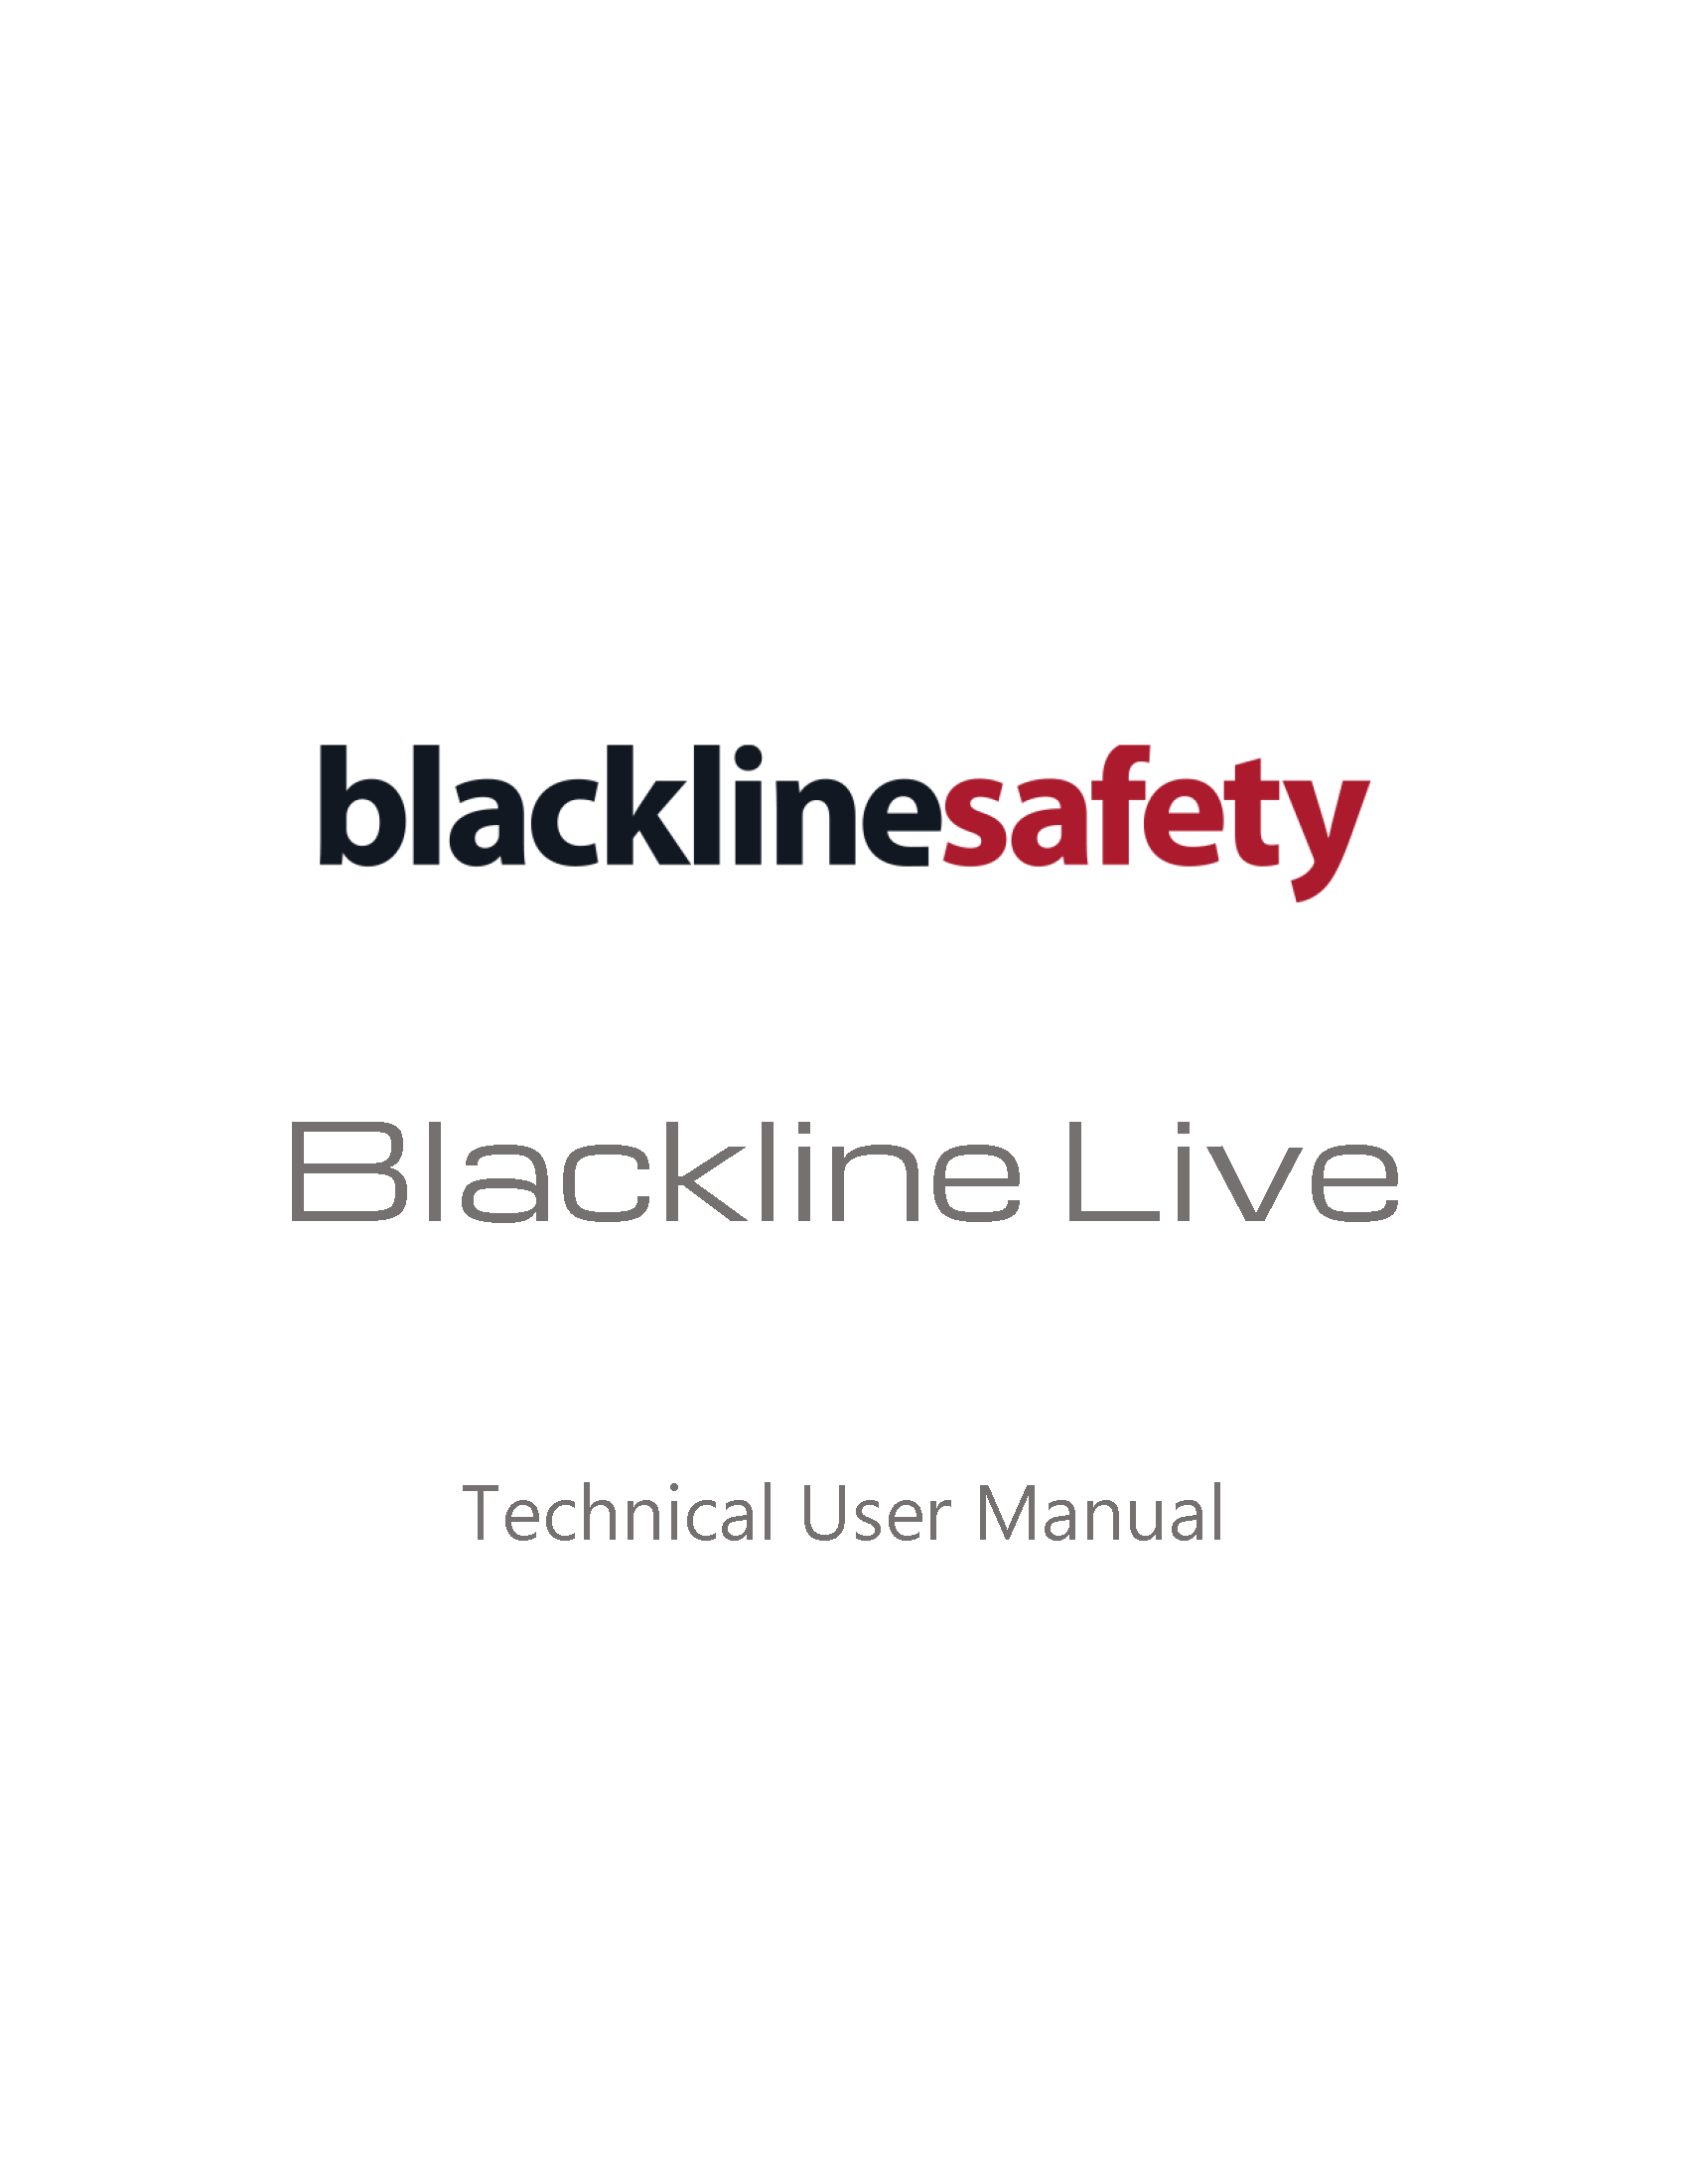 Copertina del manuale tecnico d'uso Blackline Live